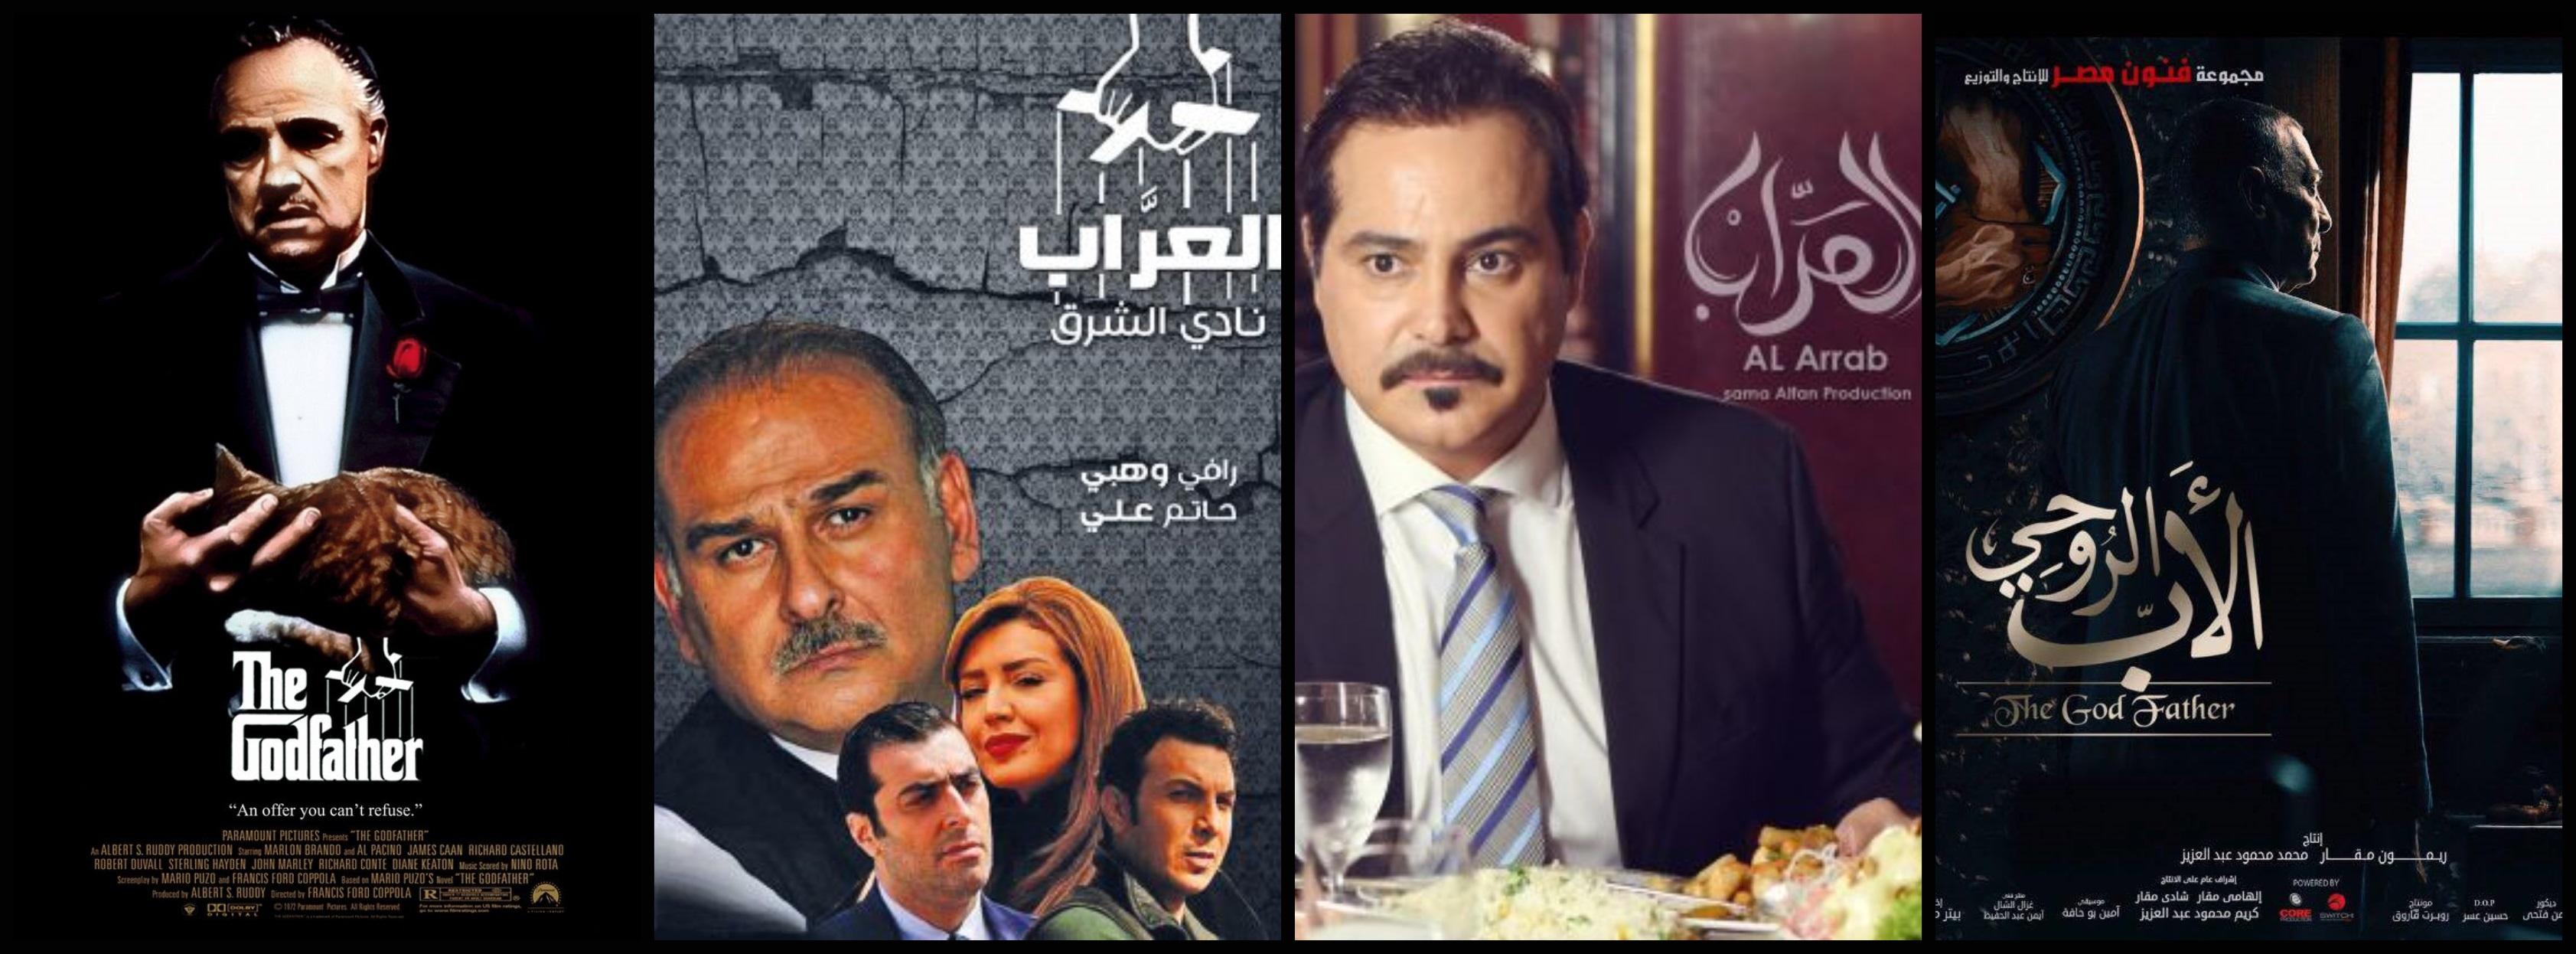 مسلسلات عربية مقتبسة من اجنبية مسلسلات العراب